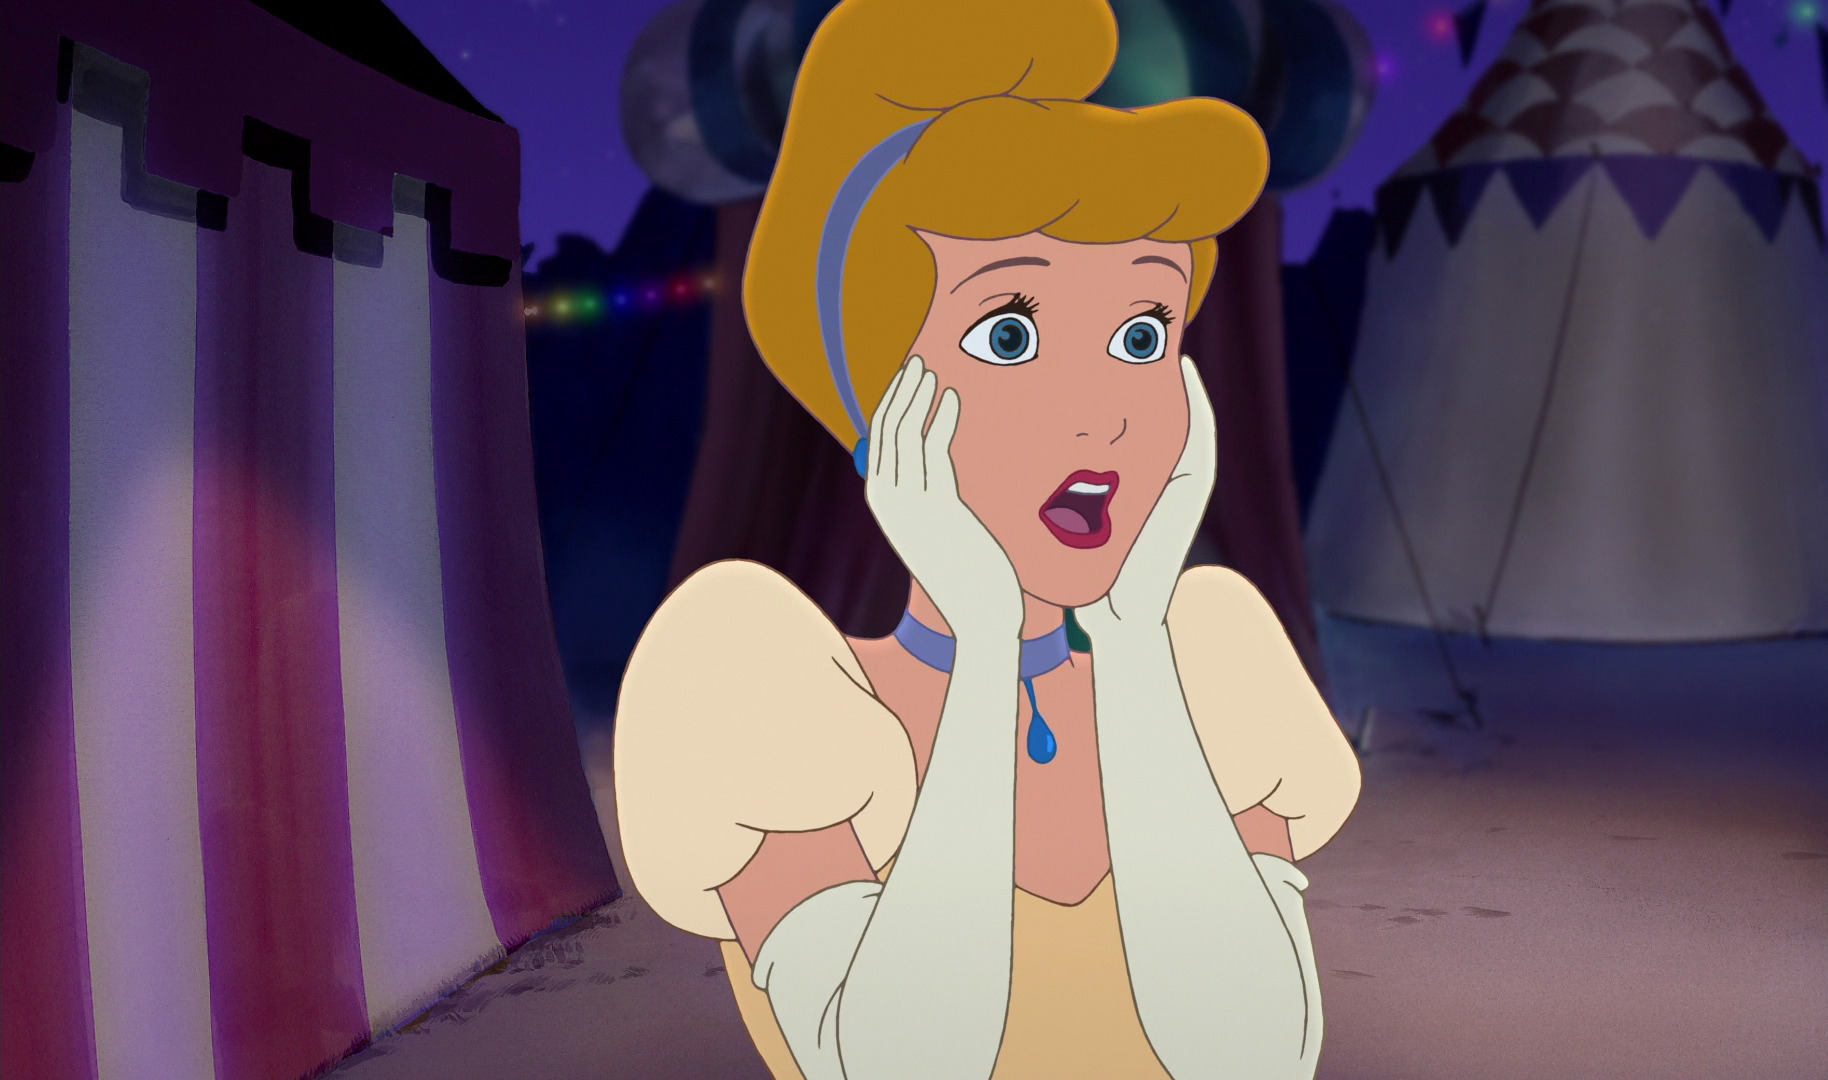 Image - Cinderella shocked.jpg | Disney Wiki | Fandom powered by Wikia